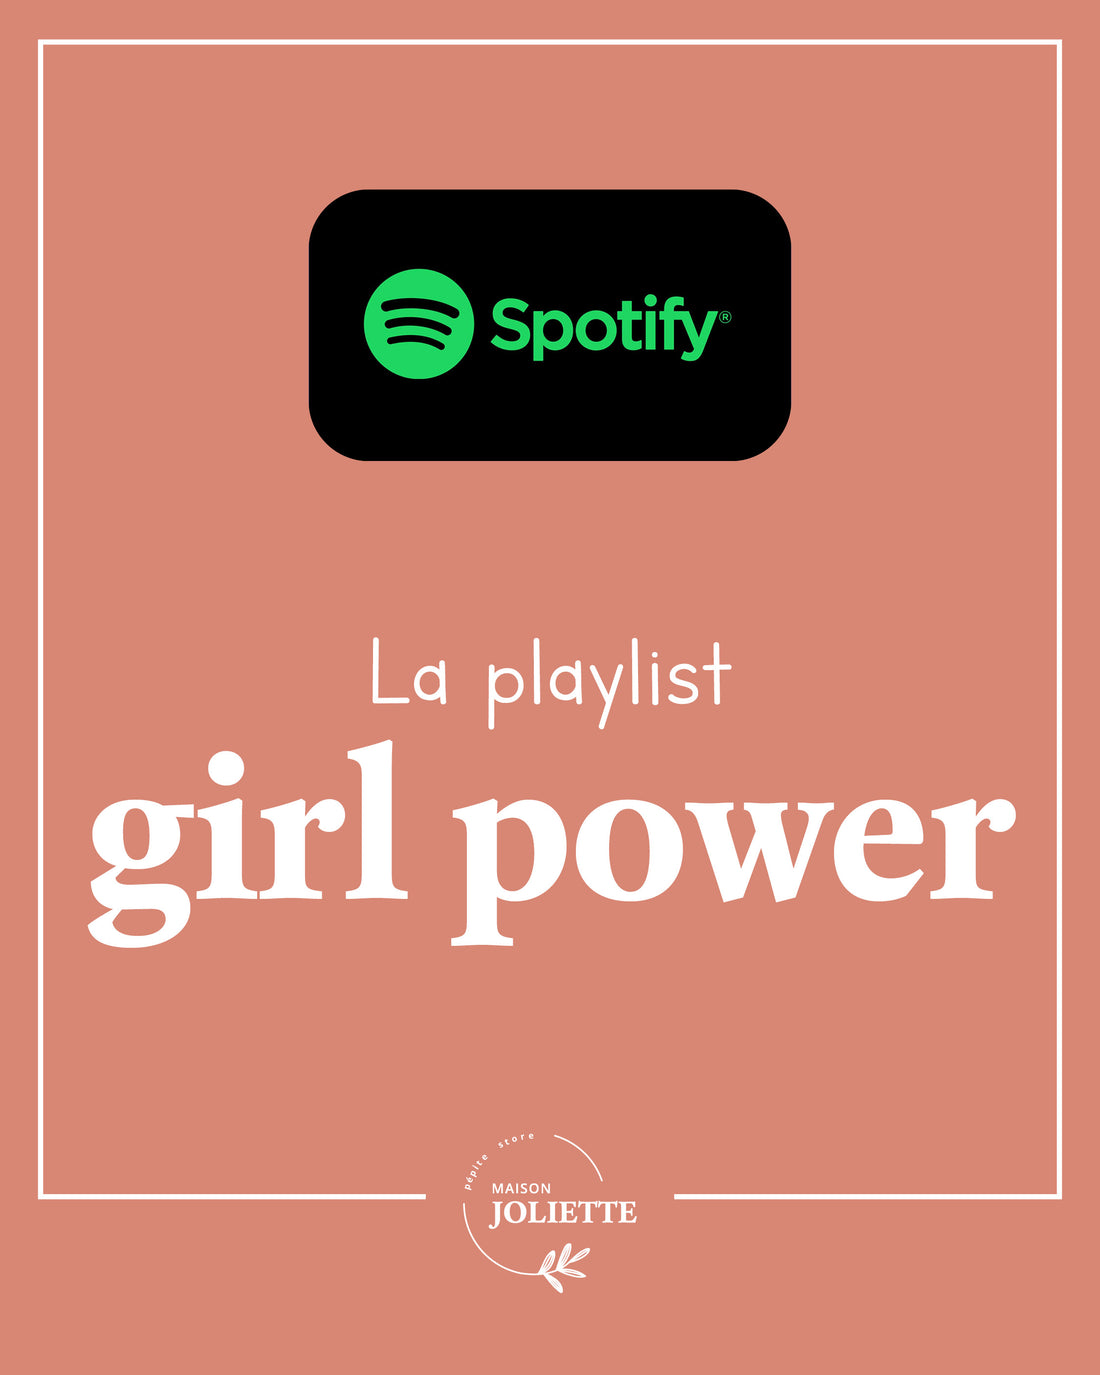 🎶 Playlist Spotify 🎵